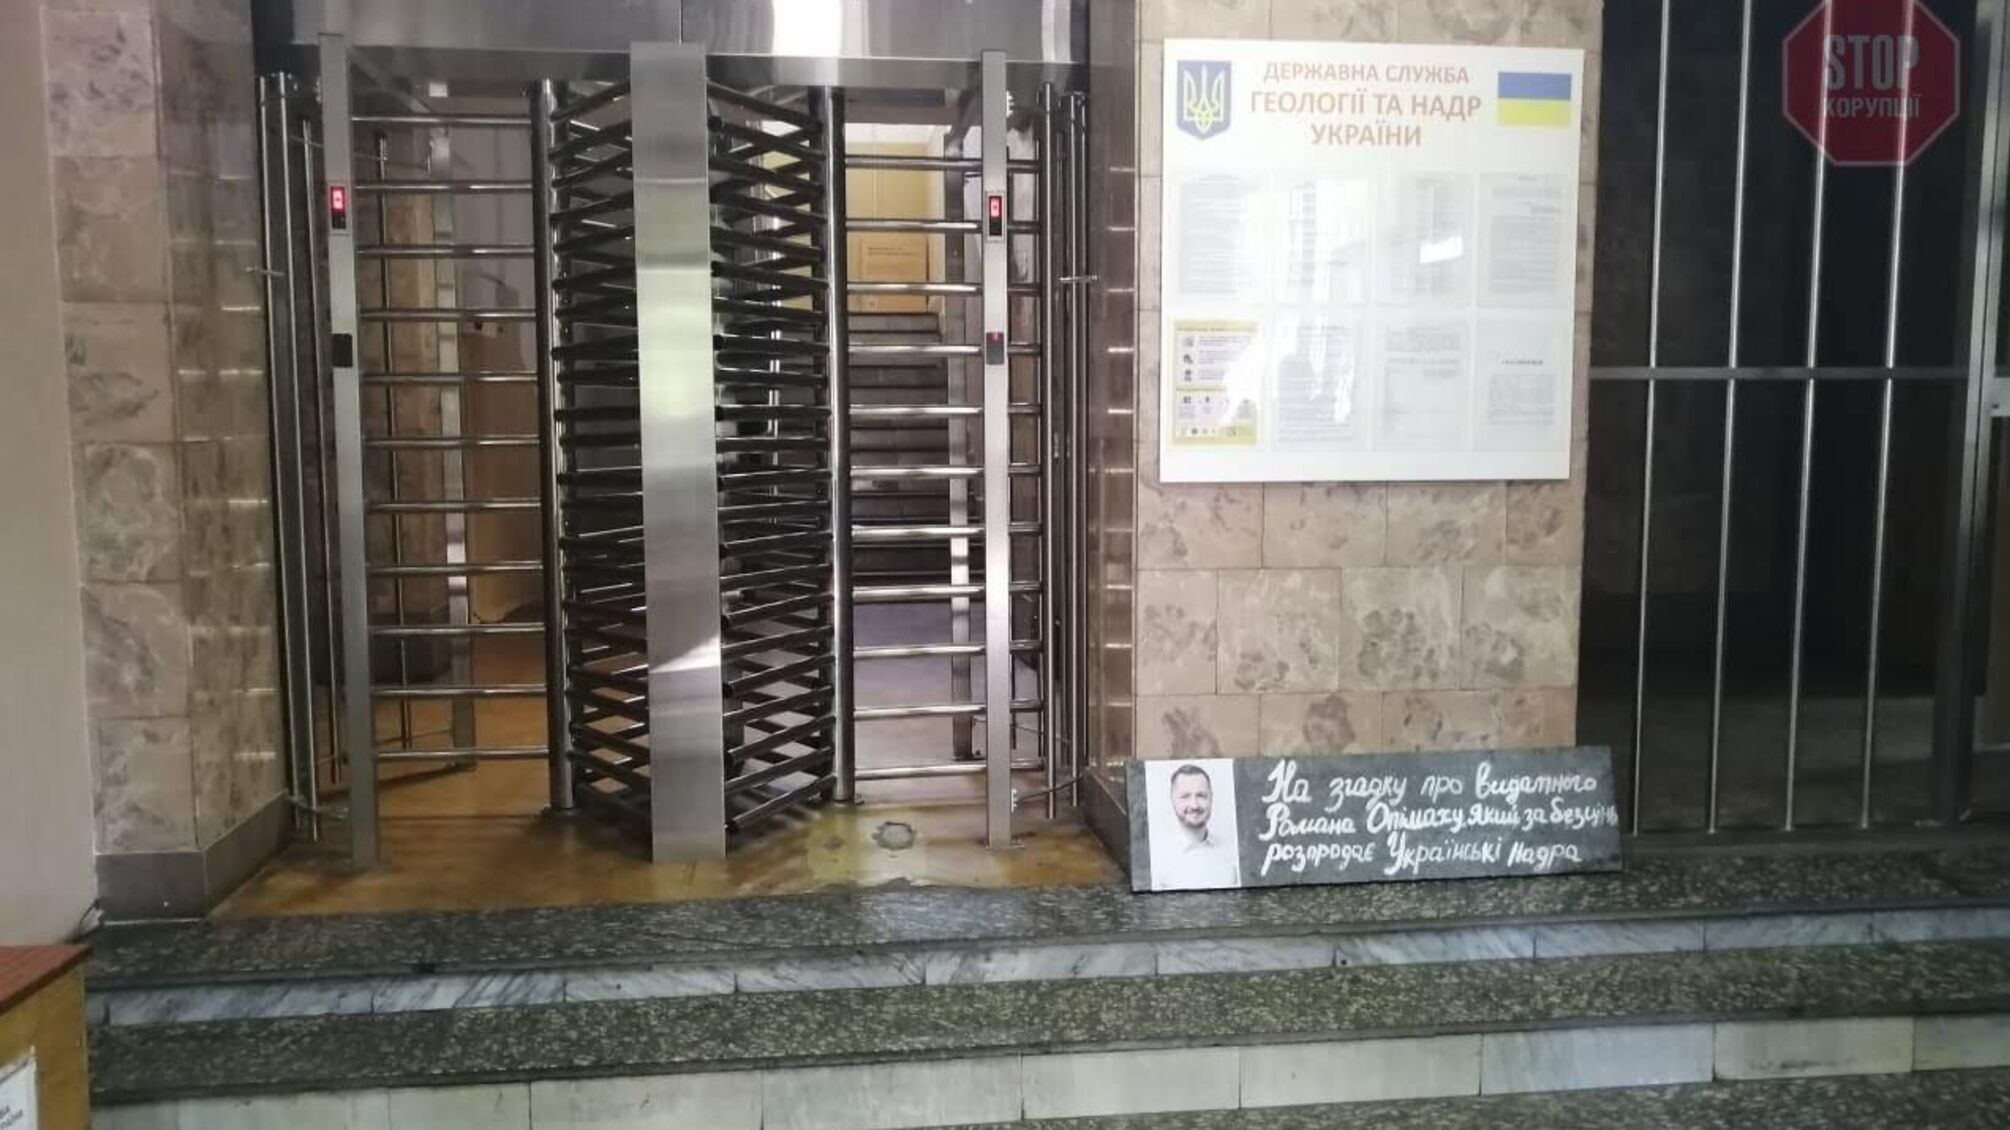 «Дякуємо за розпродаж надр України»: під Держгеонадрами встановили пам’ятник голові Опімаху